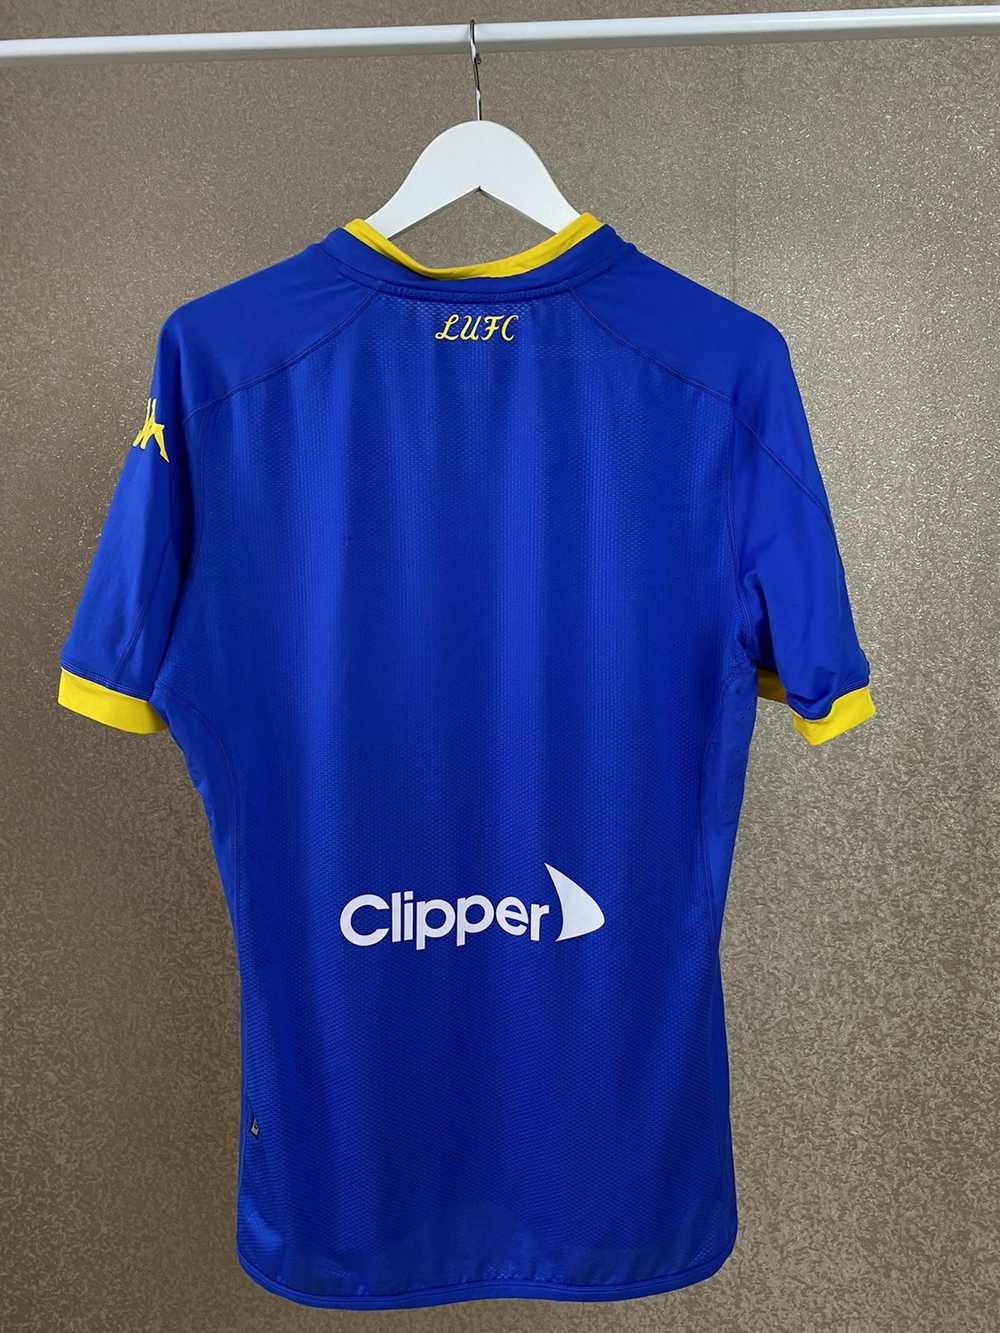 Kappa × Soccer Jersey × Vintage Leeds United Socc… - image 5